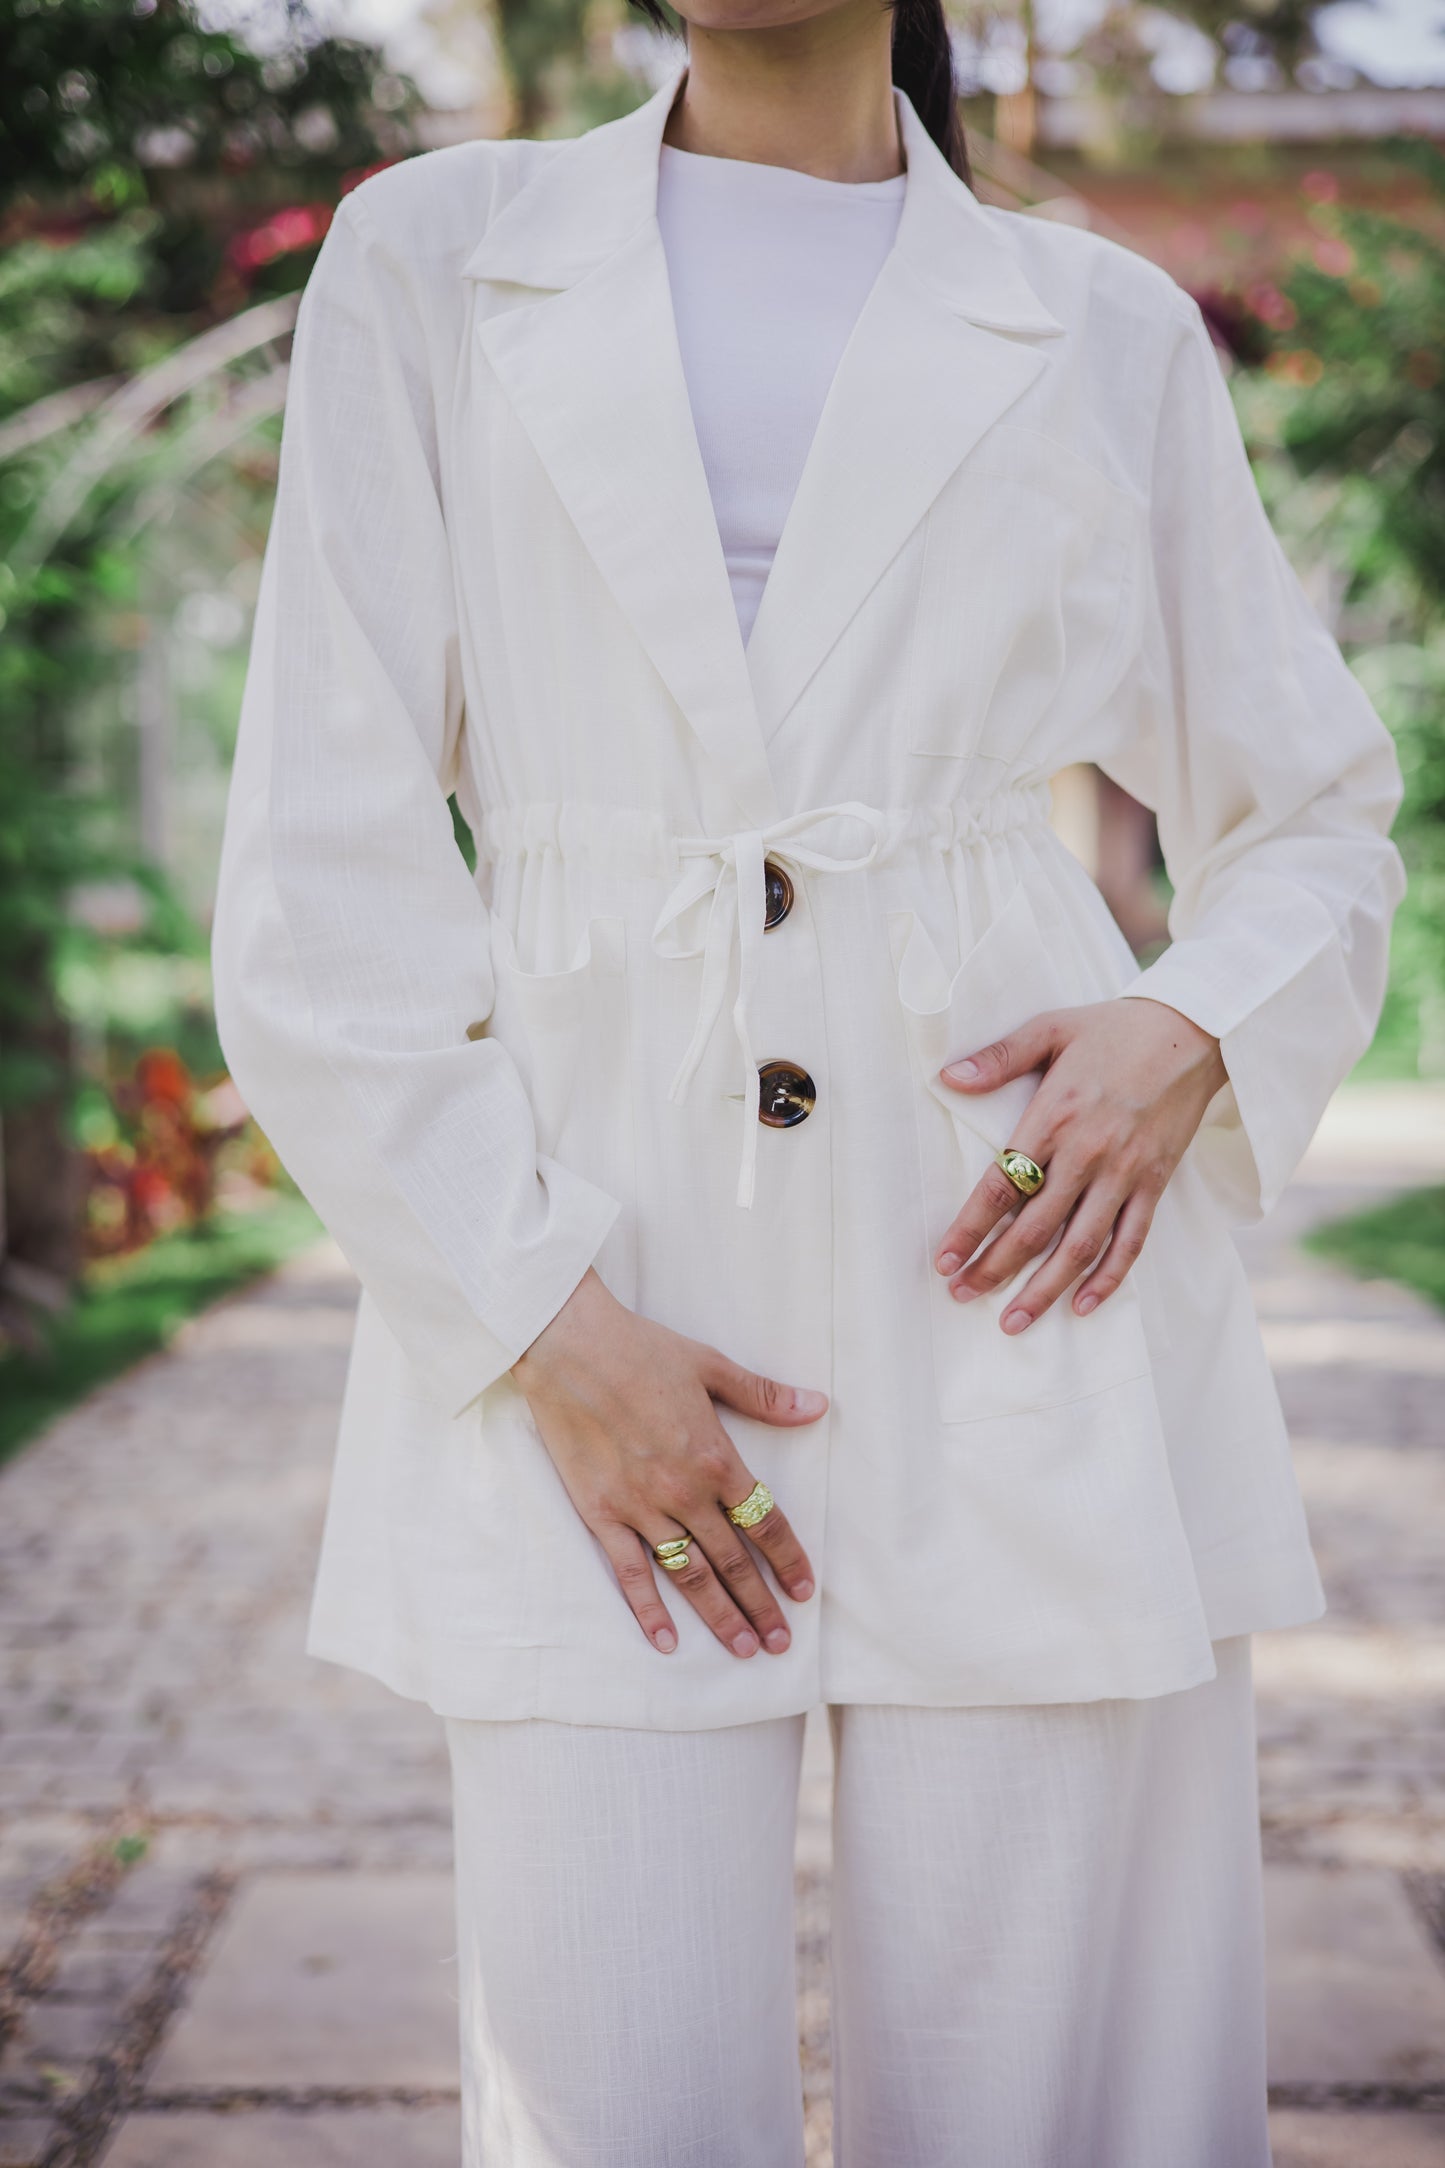 Linea blazer set in off white